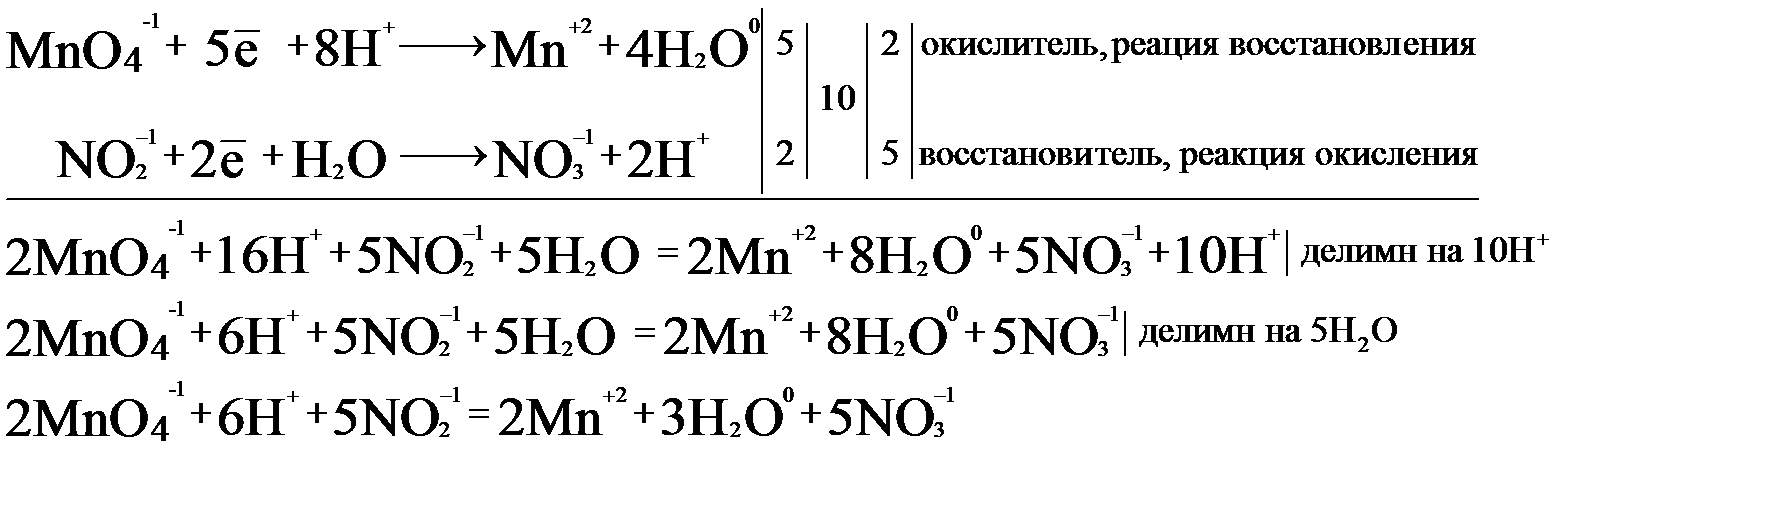 Zn znso4 овр. Nano2 ОВР. Электронно ионный метод ОВР. ОВР ZN+h2so4 znso4+h2s+h2o. ZN+h2so4 ОВР.